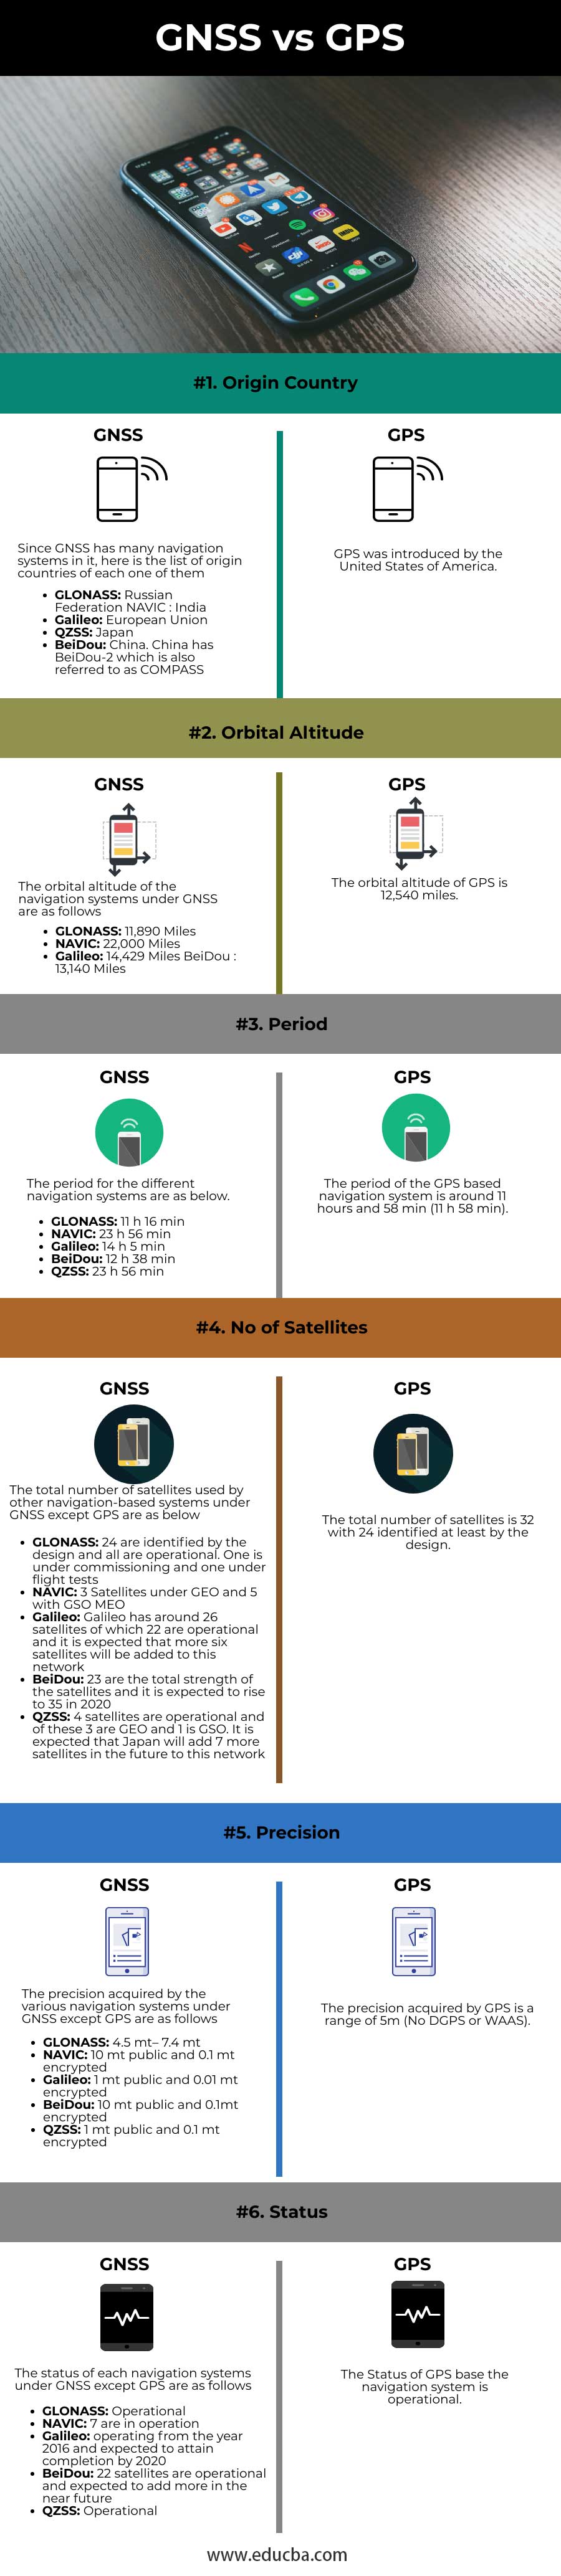 GNSS-vs-GPS-info